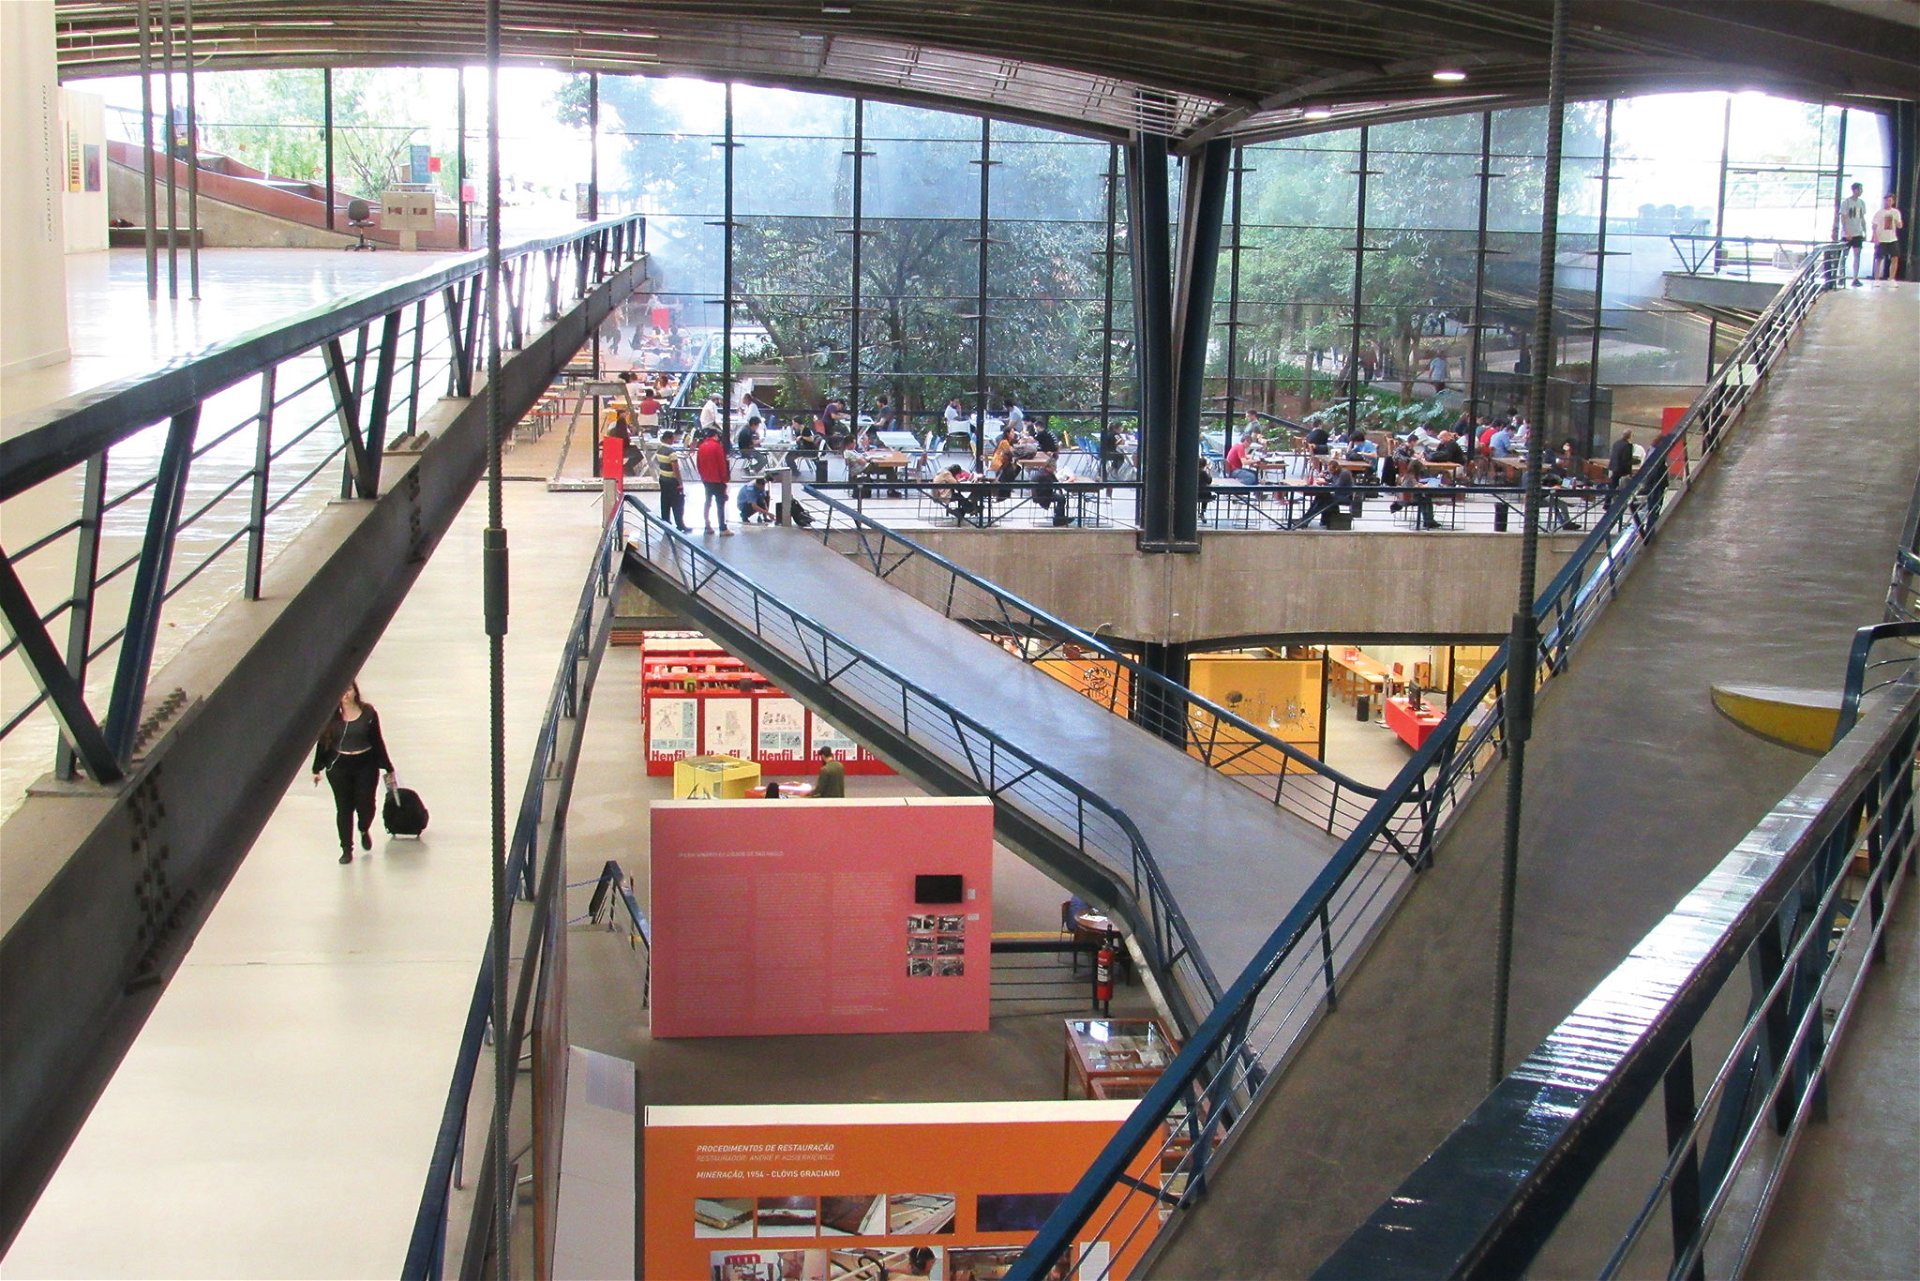 Centro Cultural São Paulo Eurico Prado Lopes und Luiz Telles, 1979 »Ein einladendes Kulturzentrum über einer der meistbenutzten Metrostationen. Hier gibt es Events, eine Bibliothek, einen Garten und Cafés. Ein Treffpunkt, der allen gehört.«